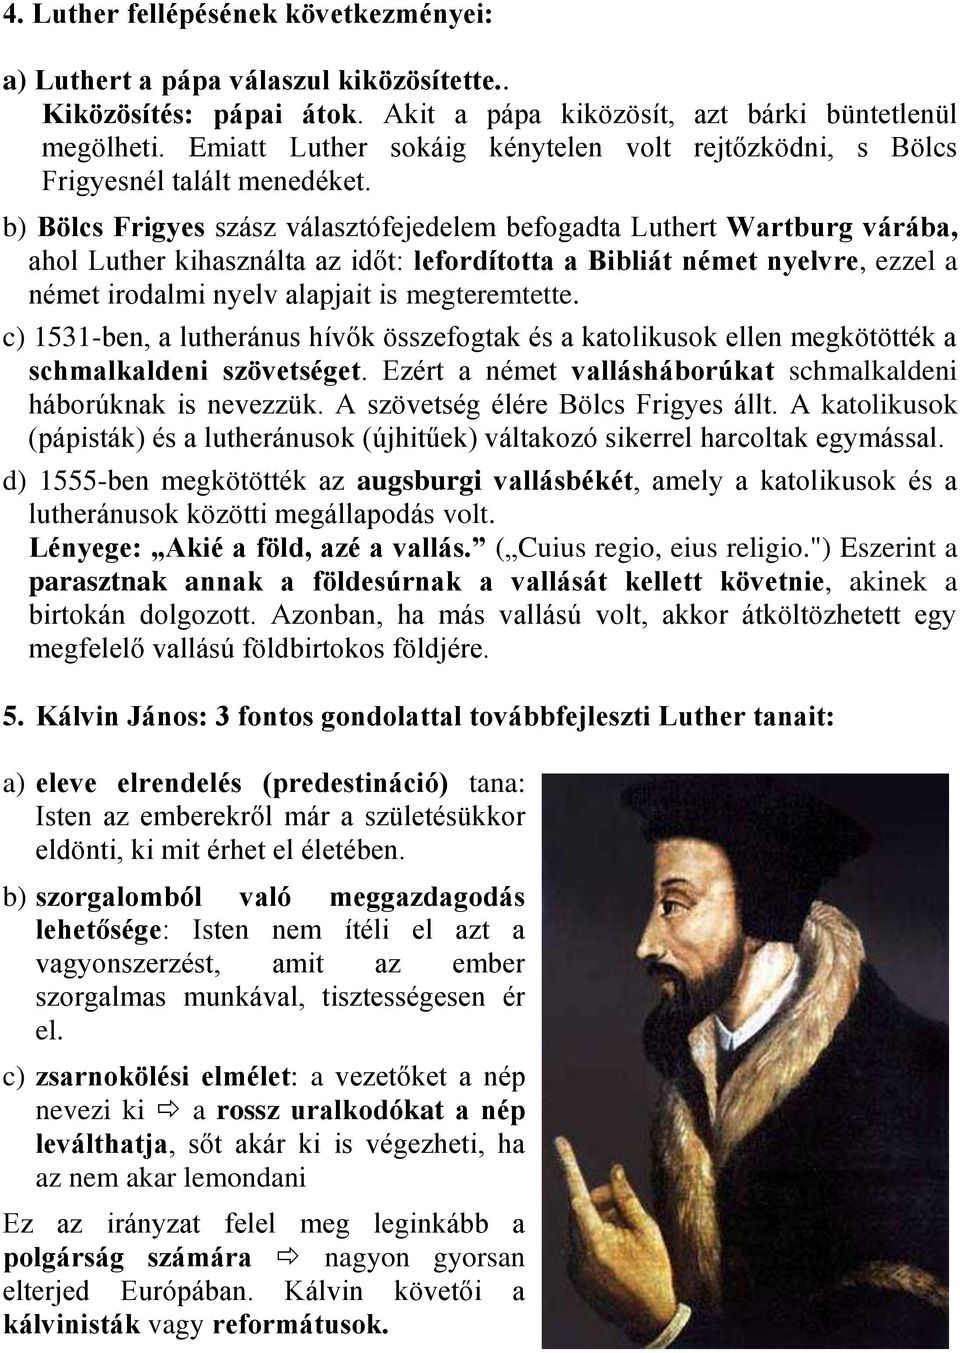 b) Bölcs Frigyes szász választófejedelem befogadta Luthert Wartburg várába, ahol Luther kihasználta az időt: lefordította a Bibliát német nyelvre, ezzel a német irodalmi nyelv alapjait is